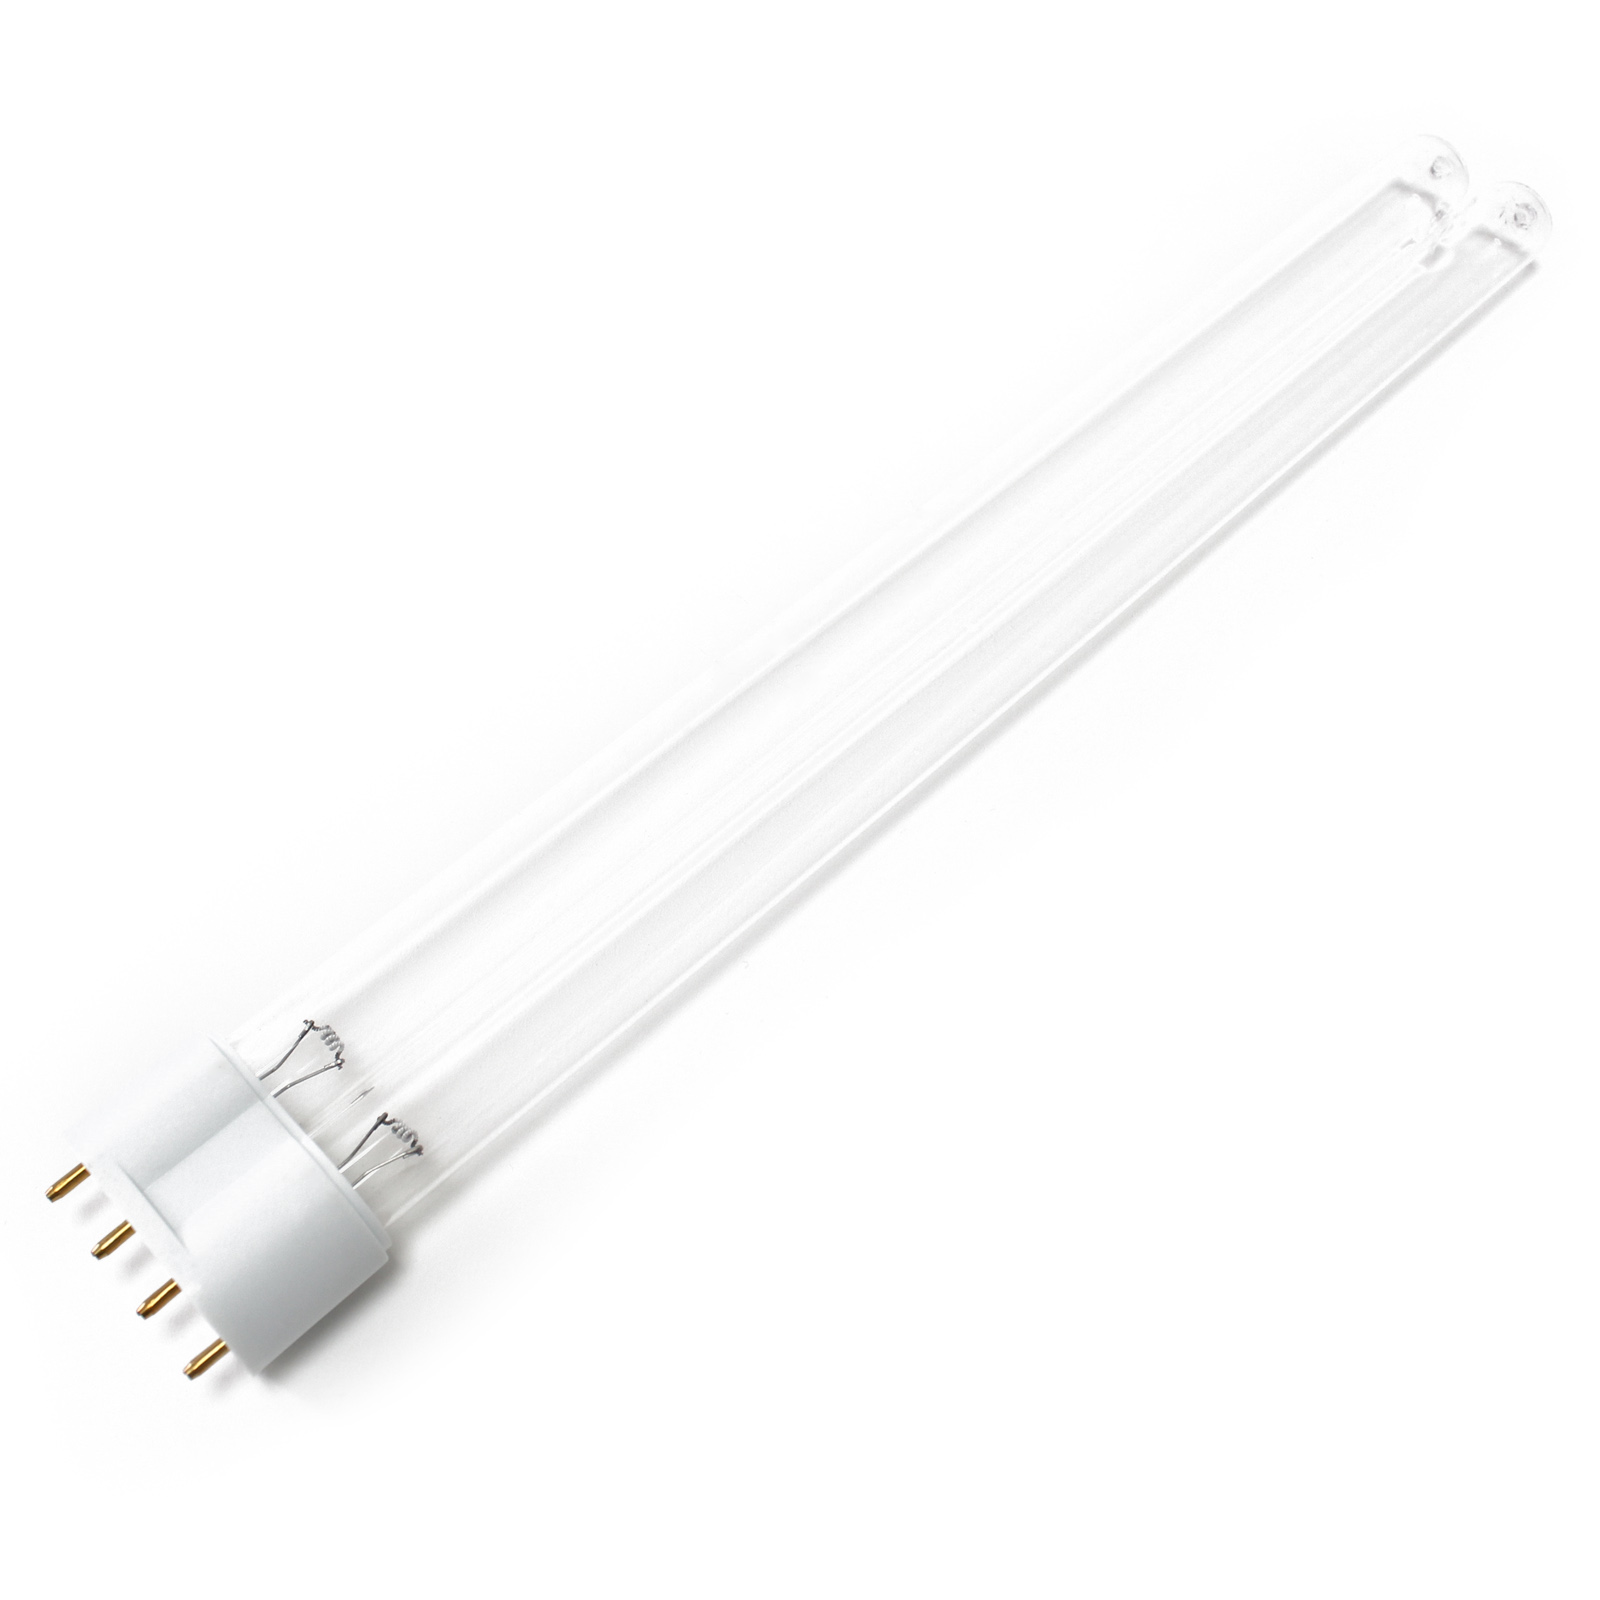 CUV-336 UV-C Lampe Röhre 36W Teich-Klärer UVC Leuchtmittel